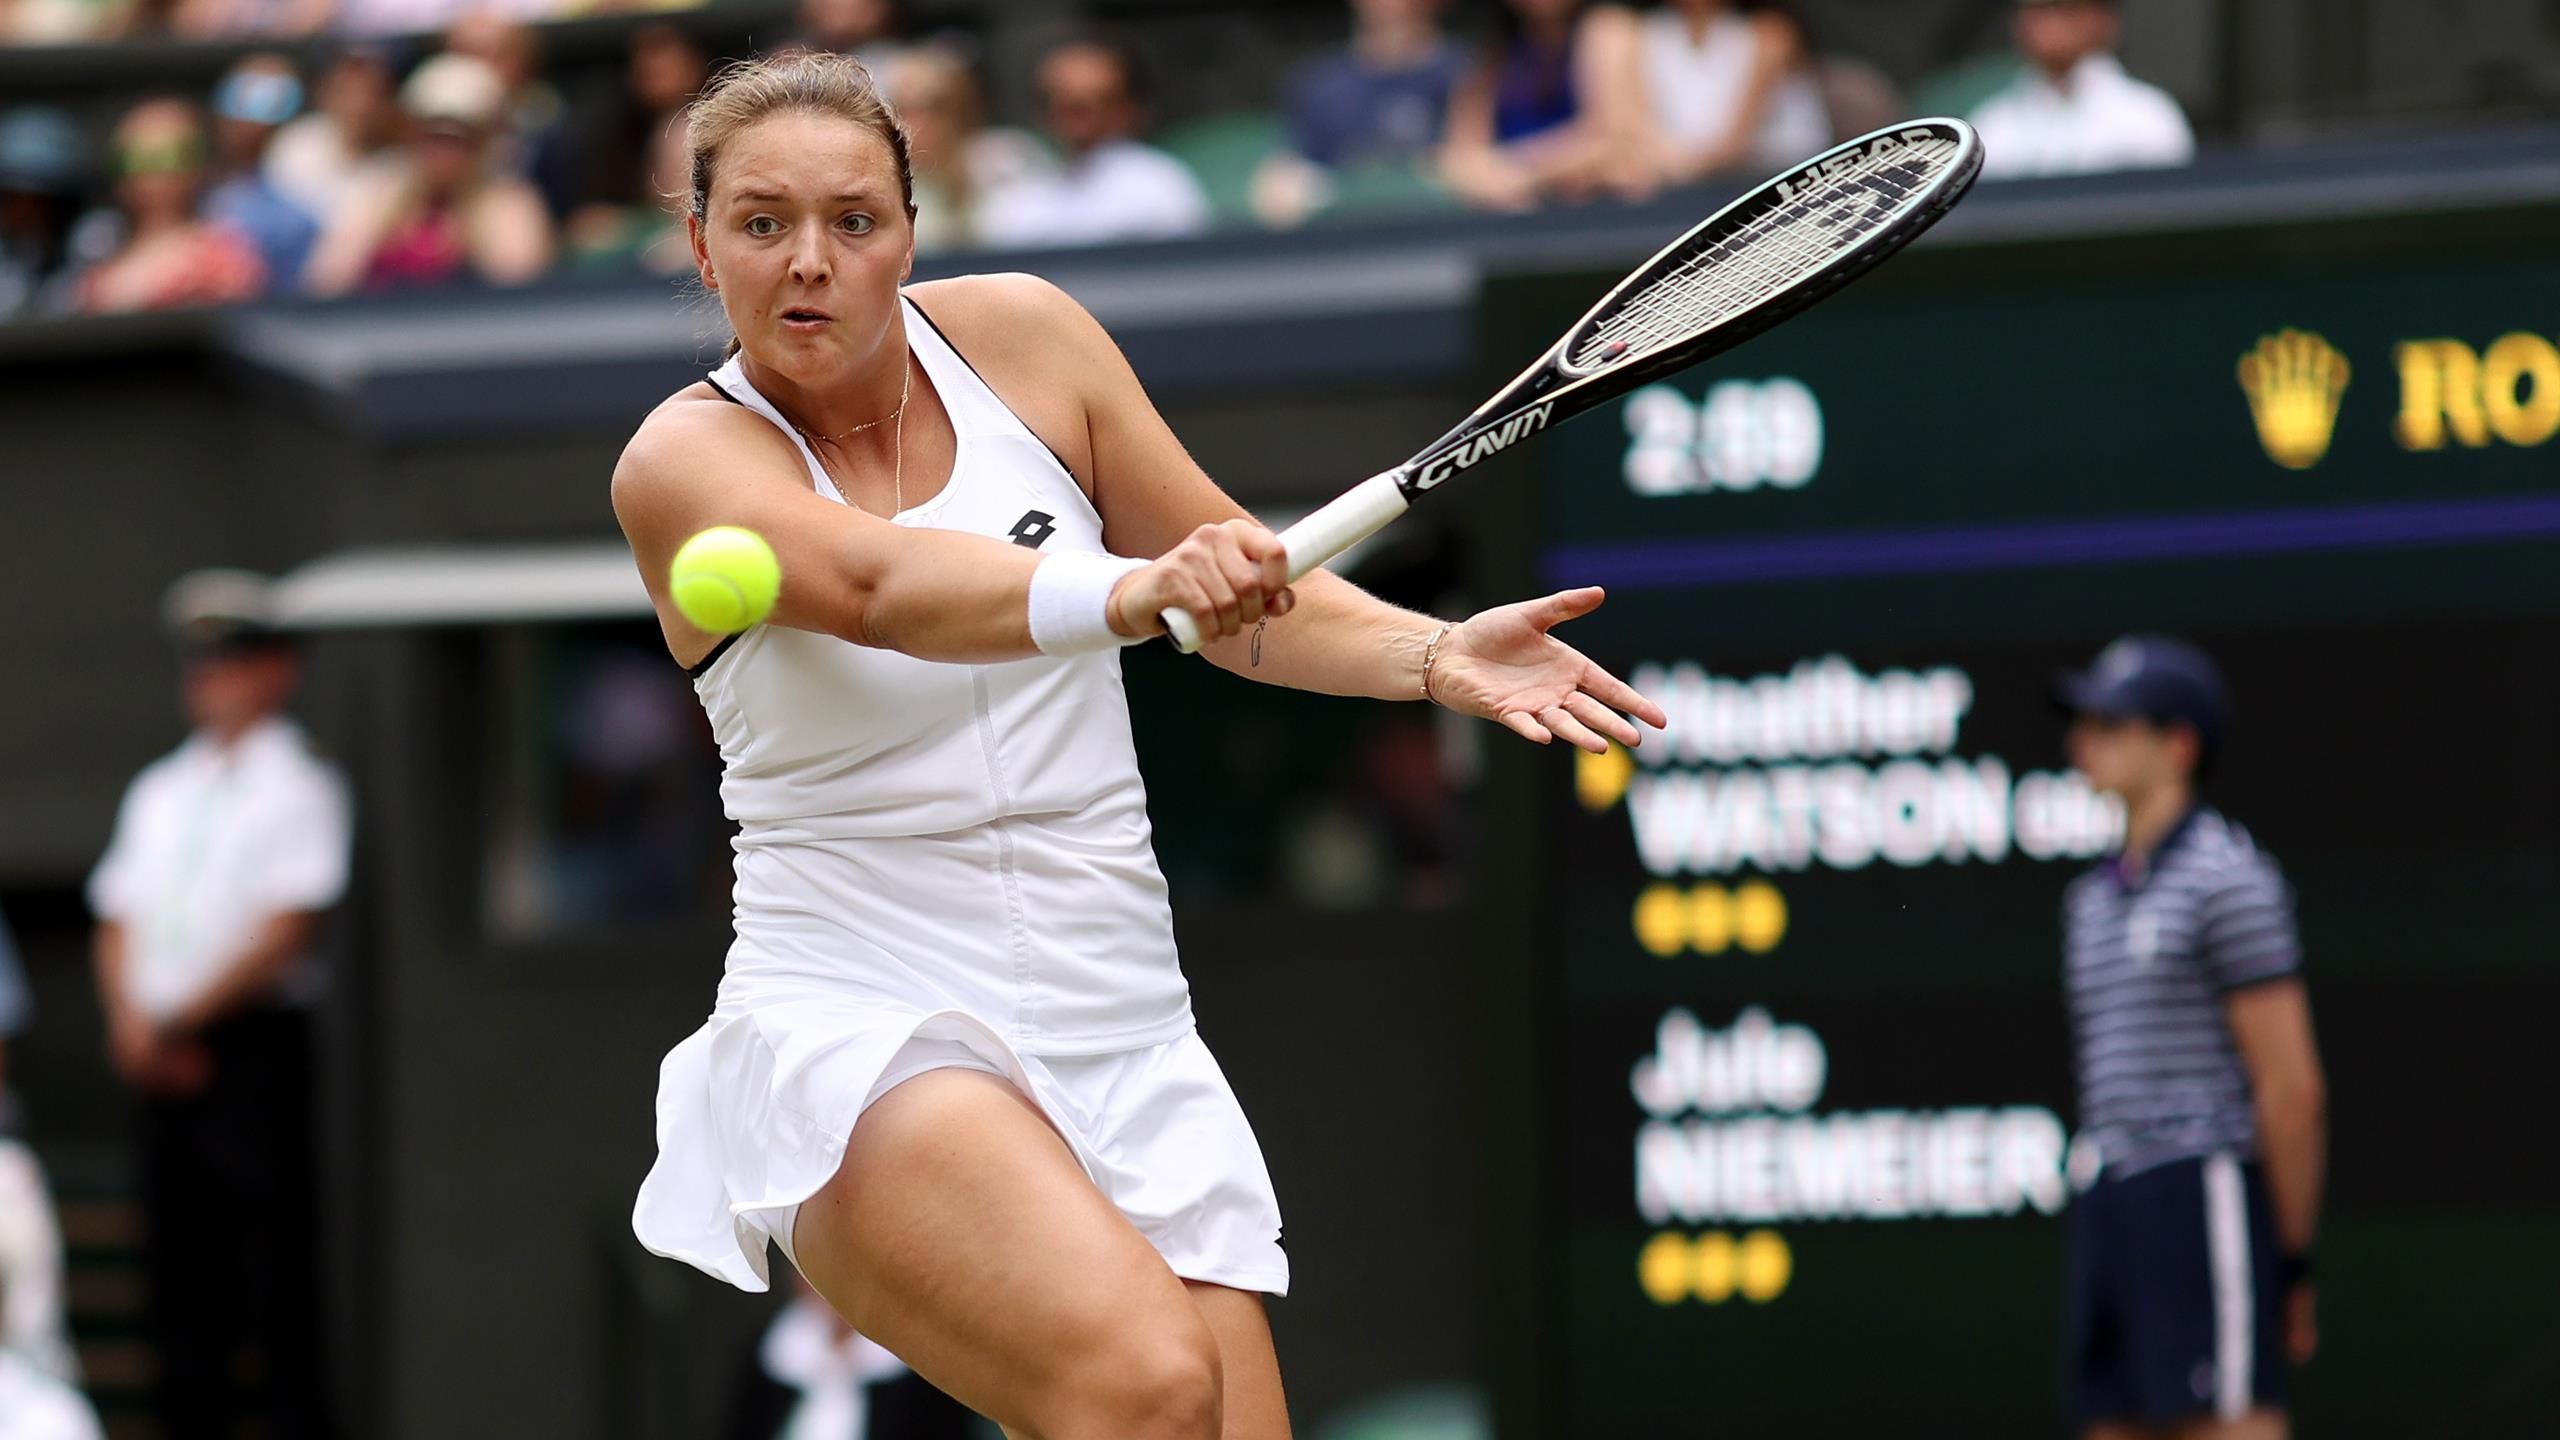 Tatjana Maria - Jule Niemeier live Viertelfinale in Wimbledon live im TV, Livestream und im Liveticker